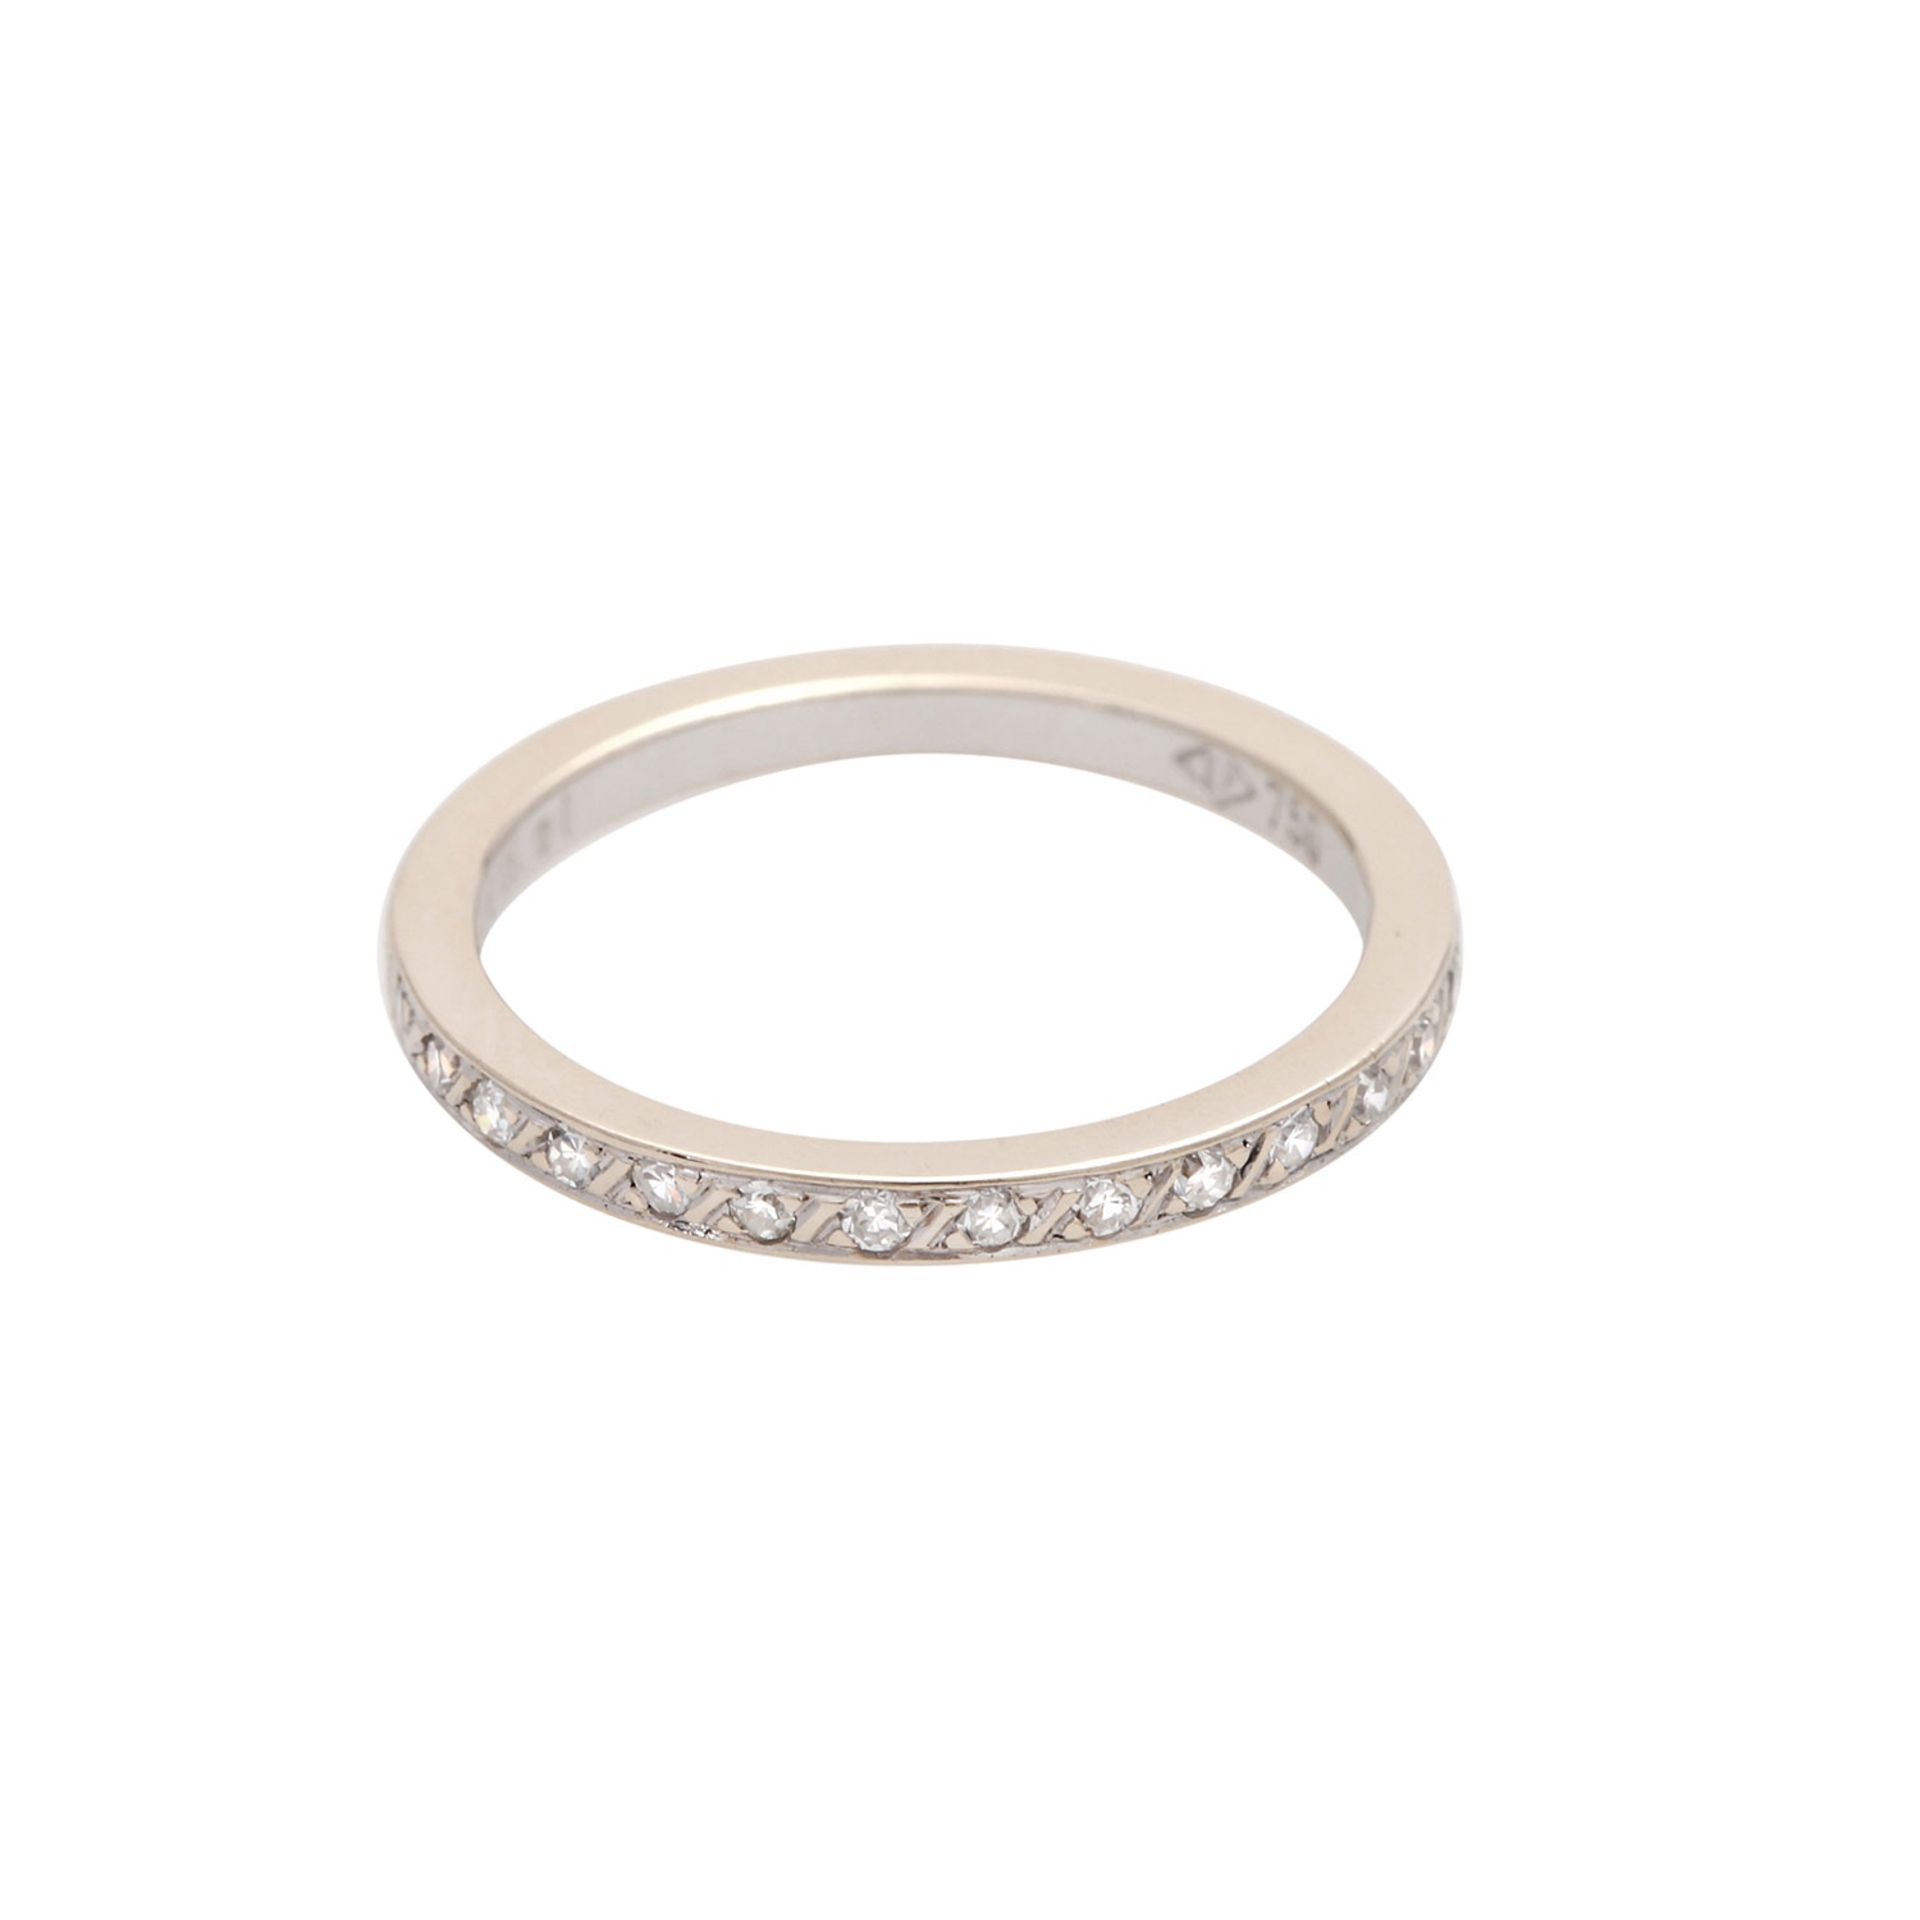 Zarter Halbmemory Ring mit Achtkantdiamanten von zus. ca. 0,15 ct, WEISS (H) / SI (grav.), WG 18K,